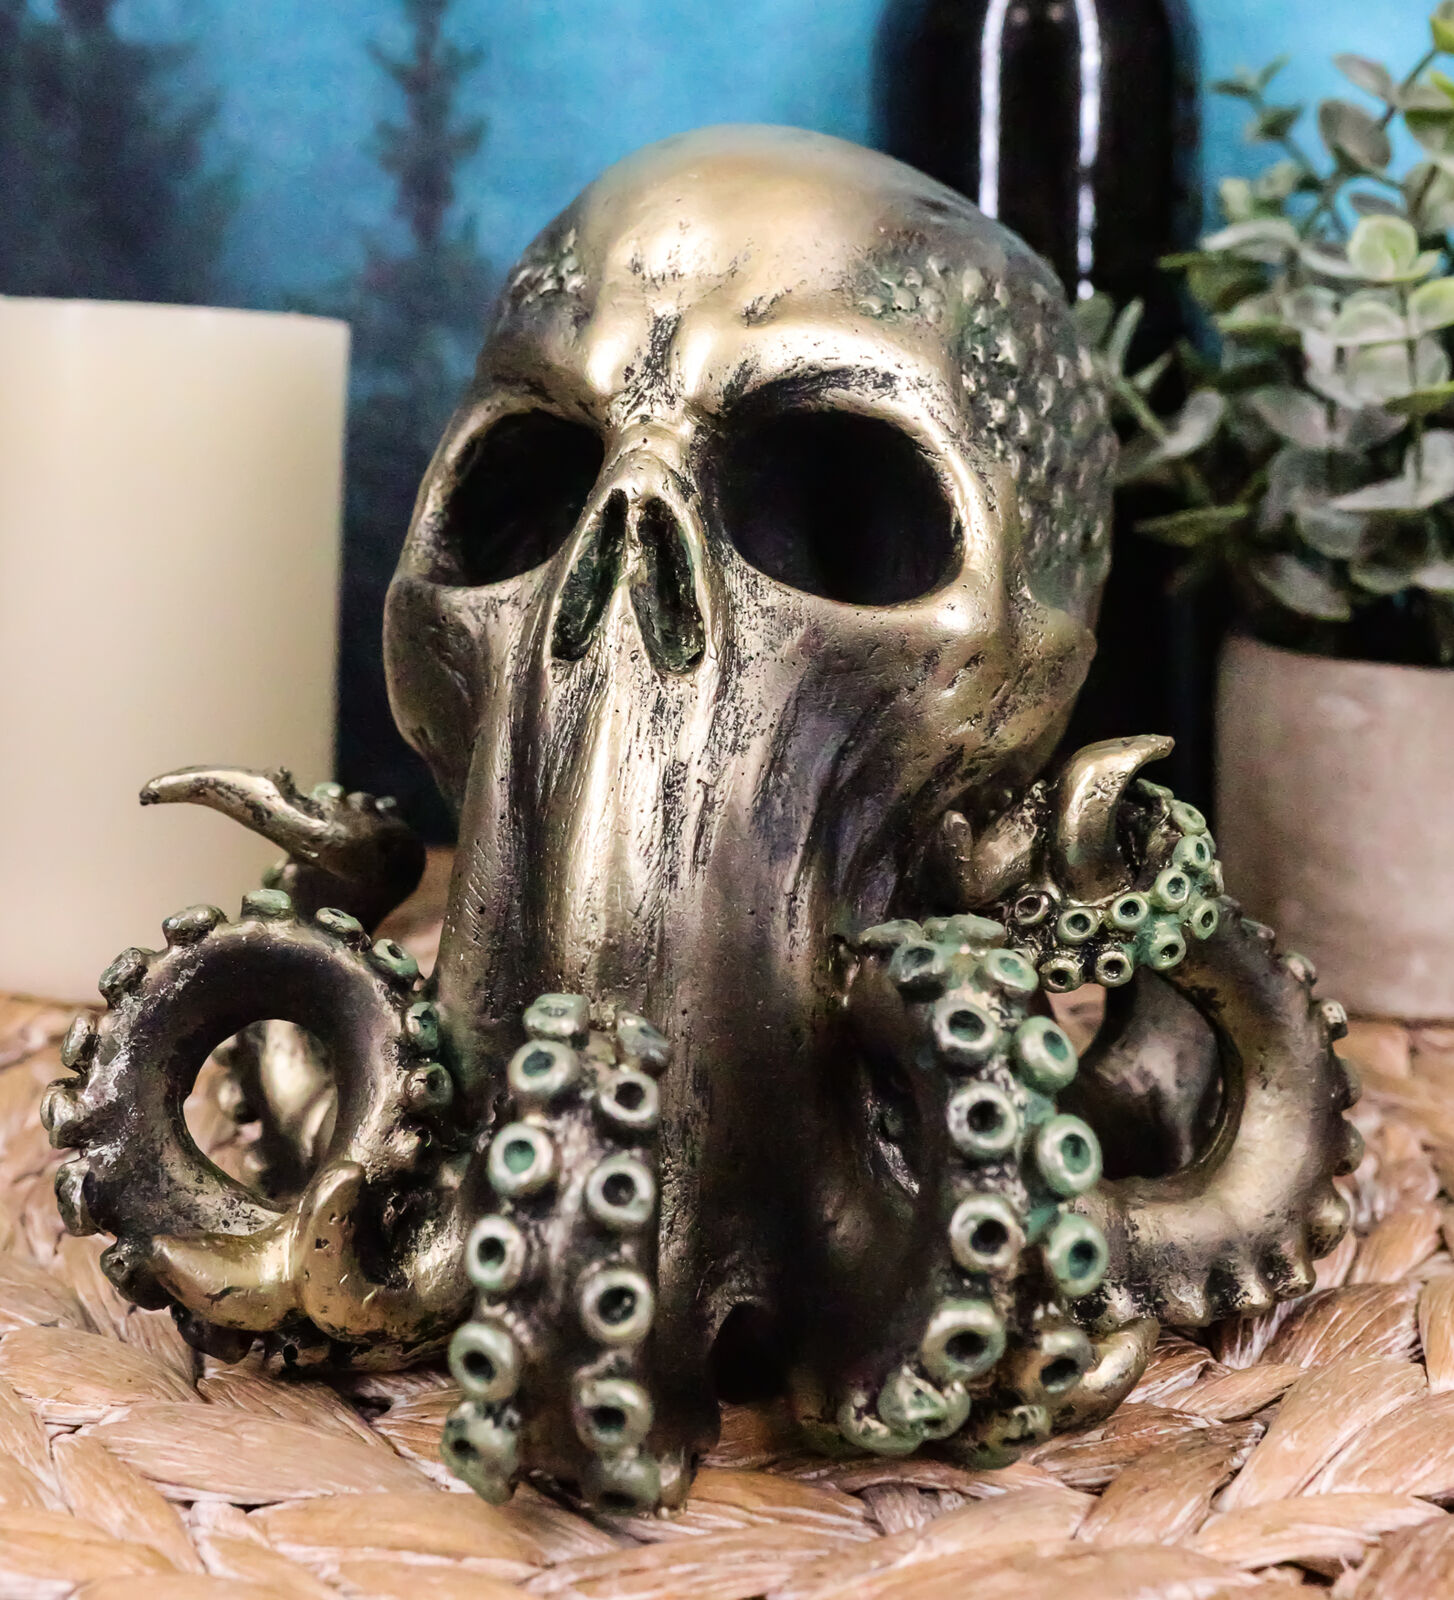 Ocean Monster Terror Kraken Cthulhu Skull Figurine 6